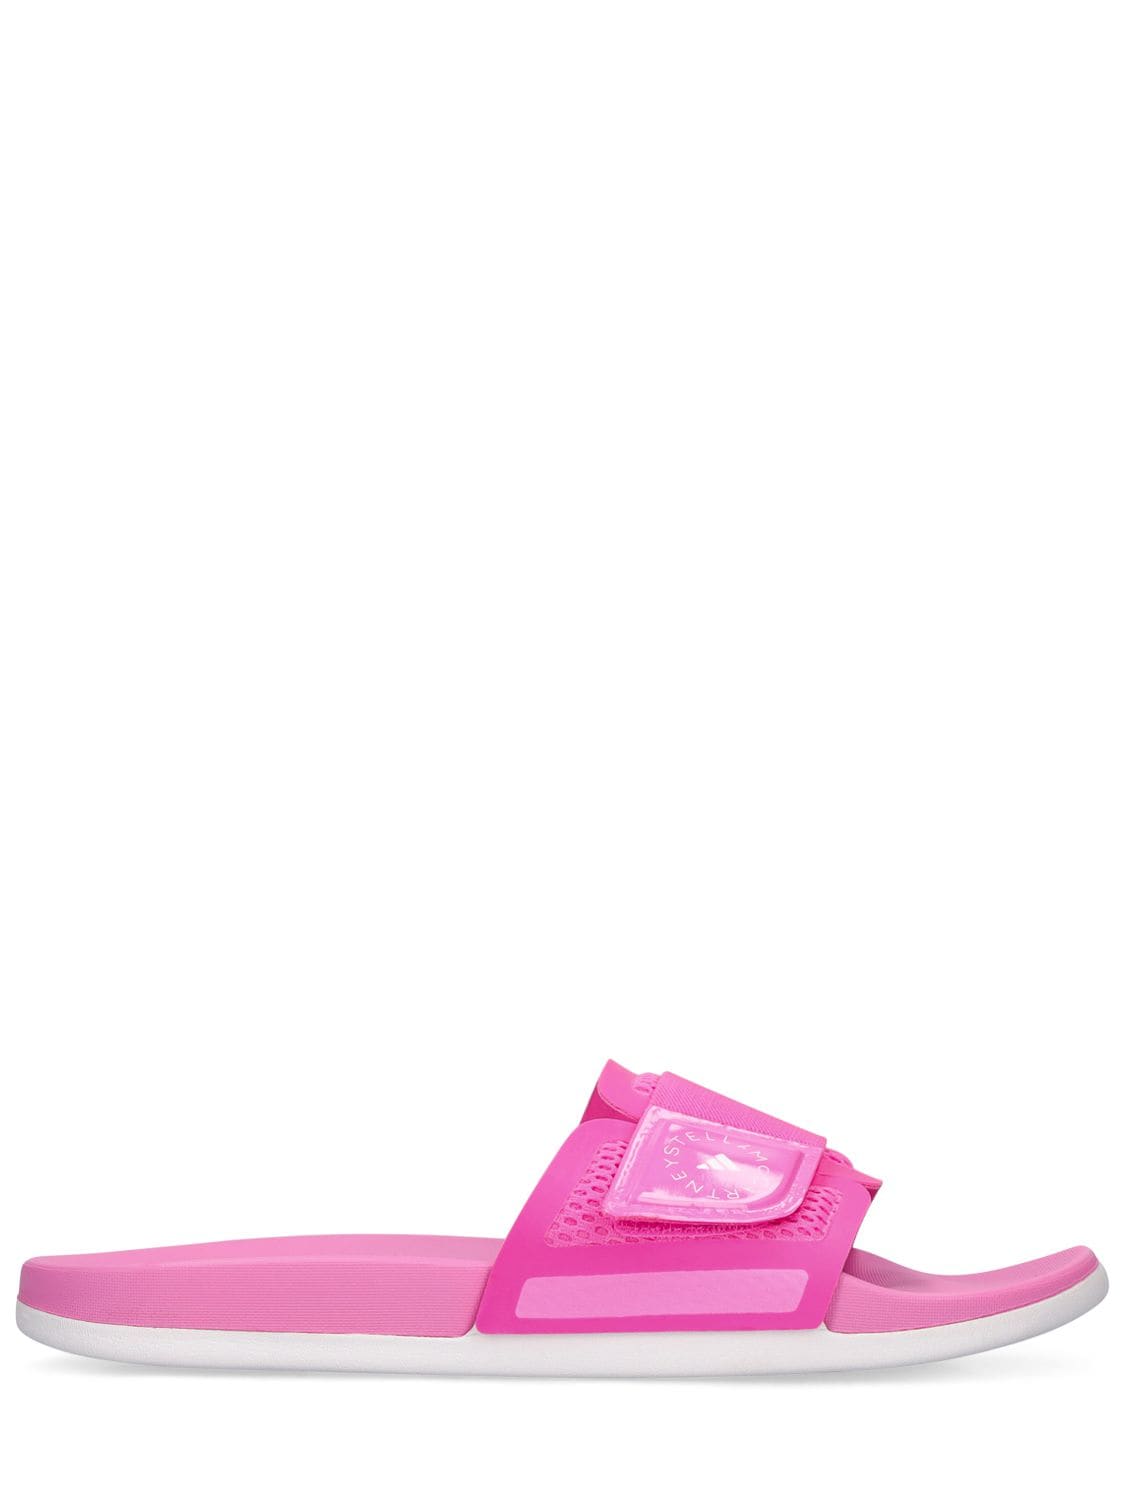 Asmc Slide Sandals image